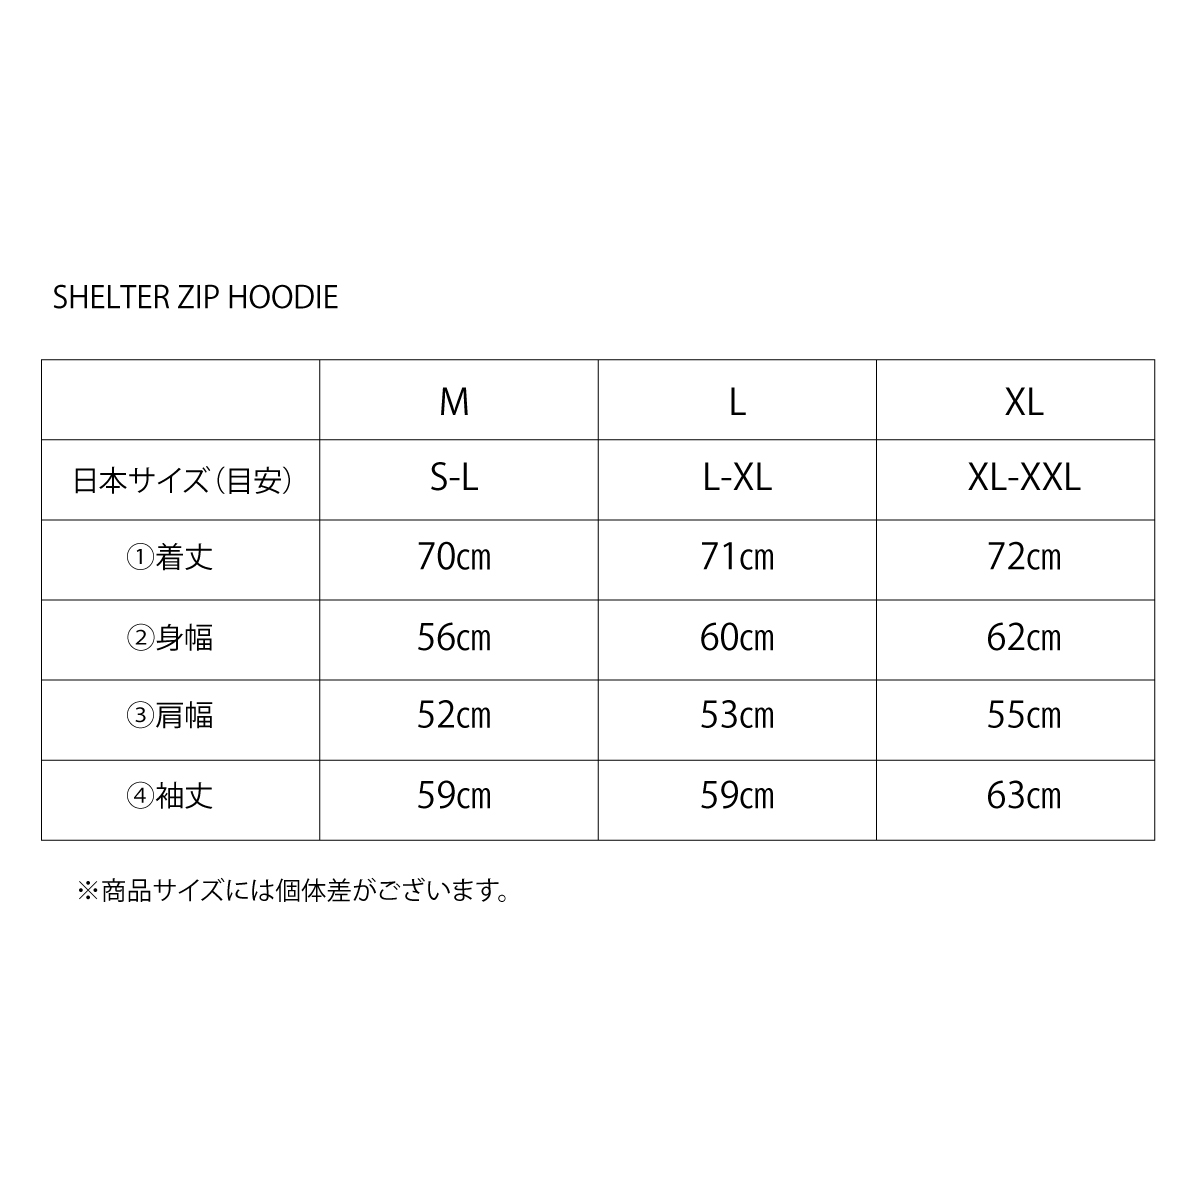 SHELTER ZIP HOODIE【Unisex】